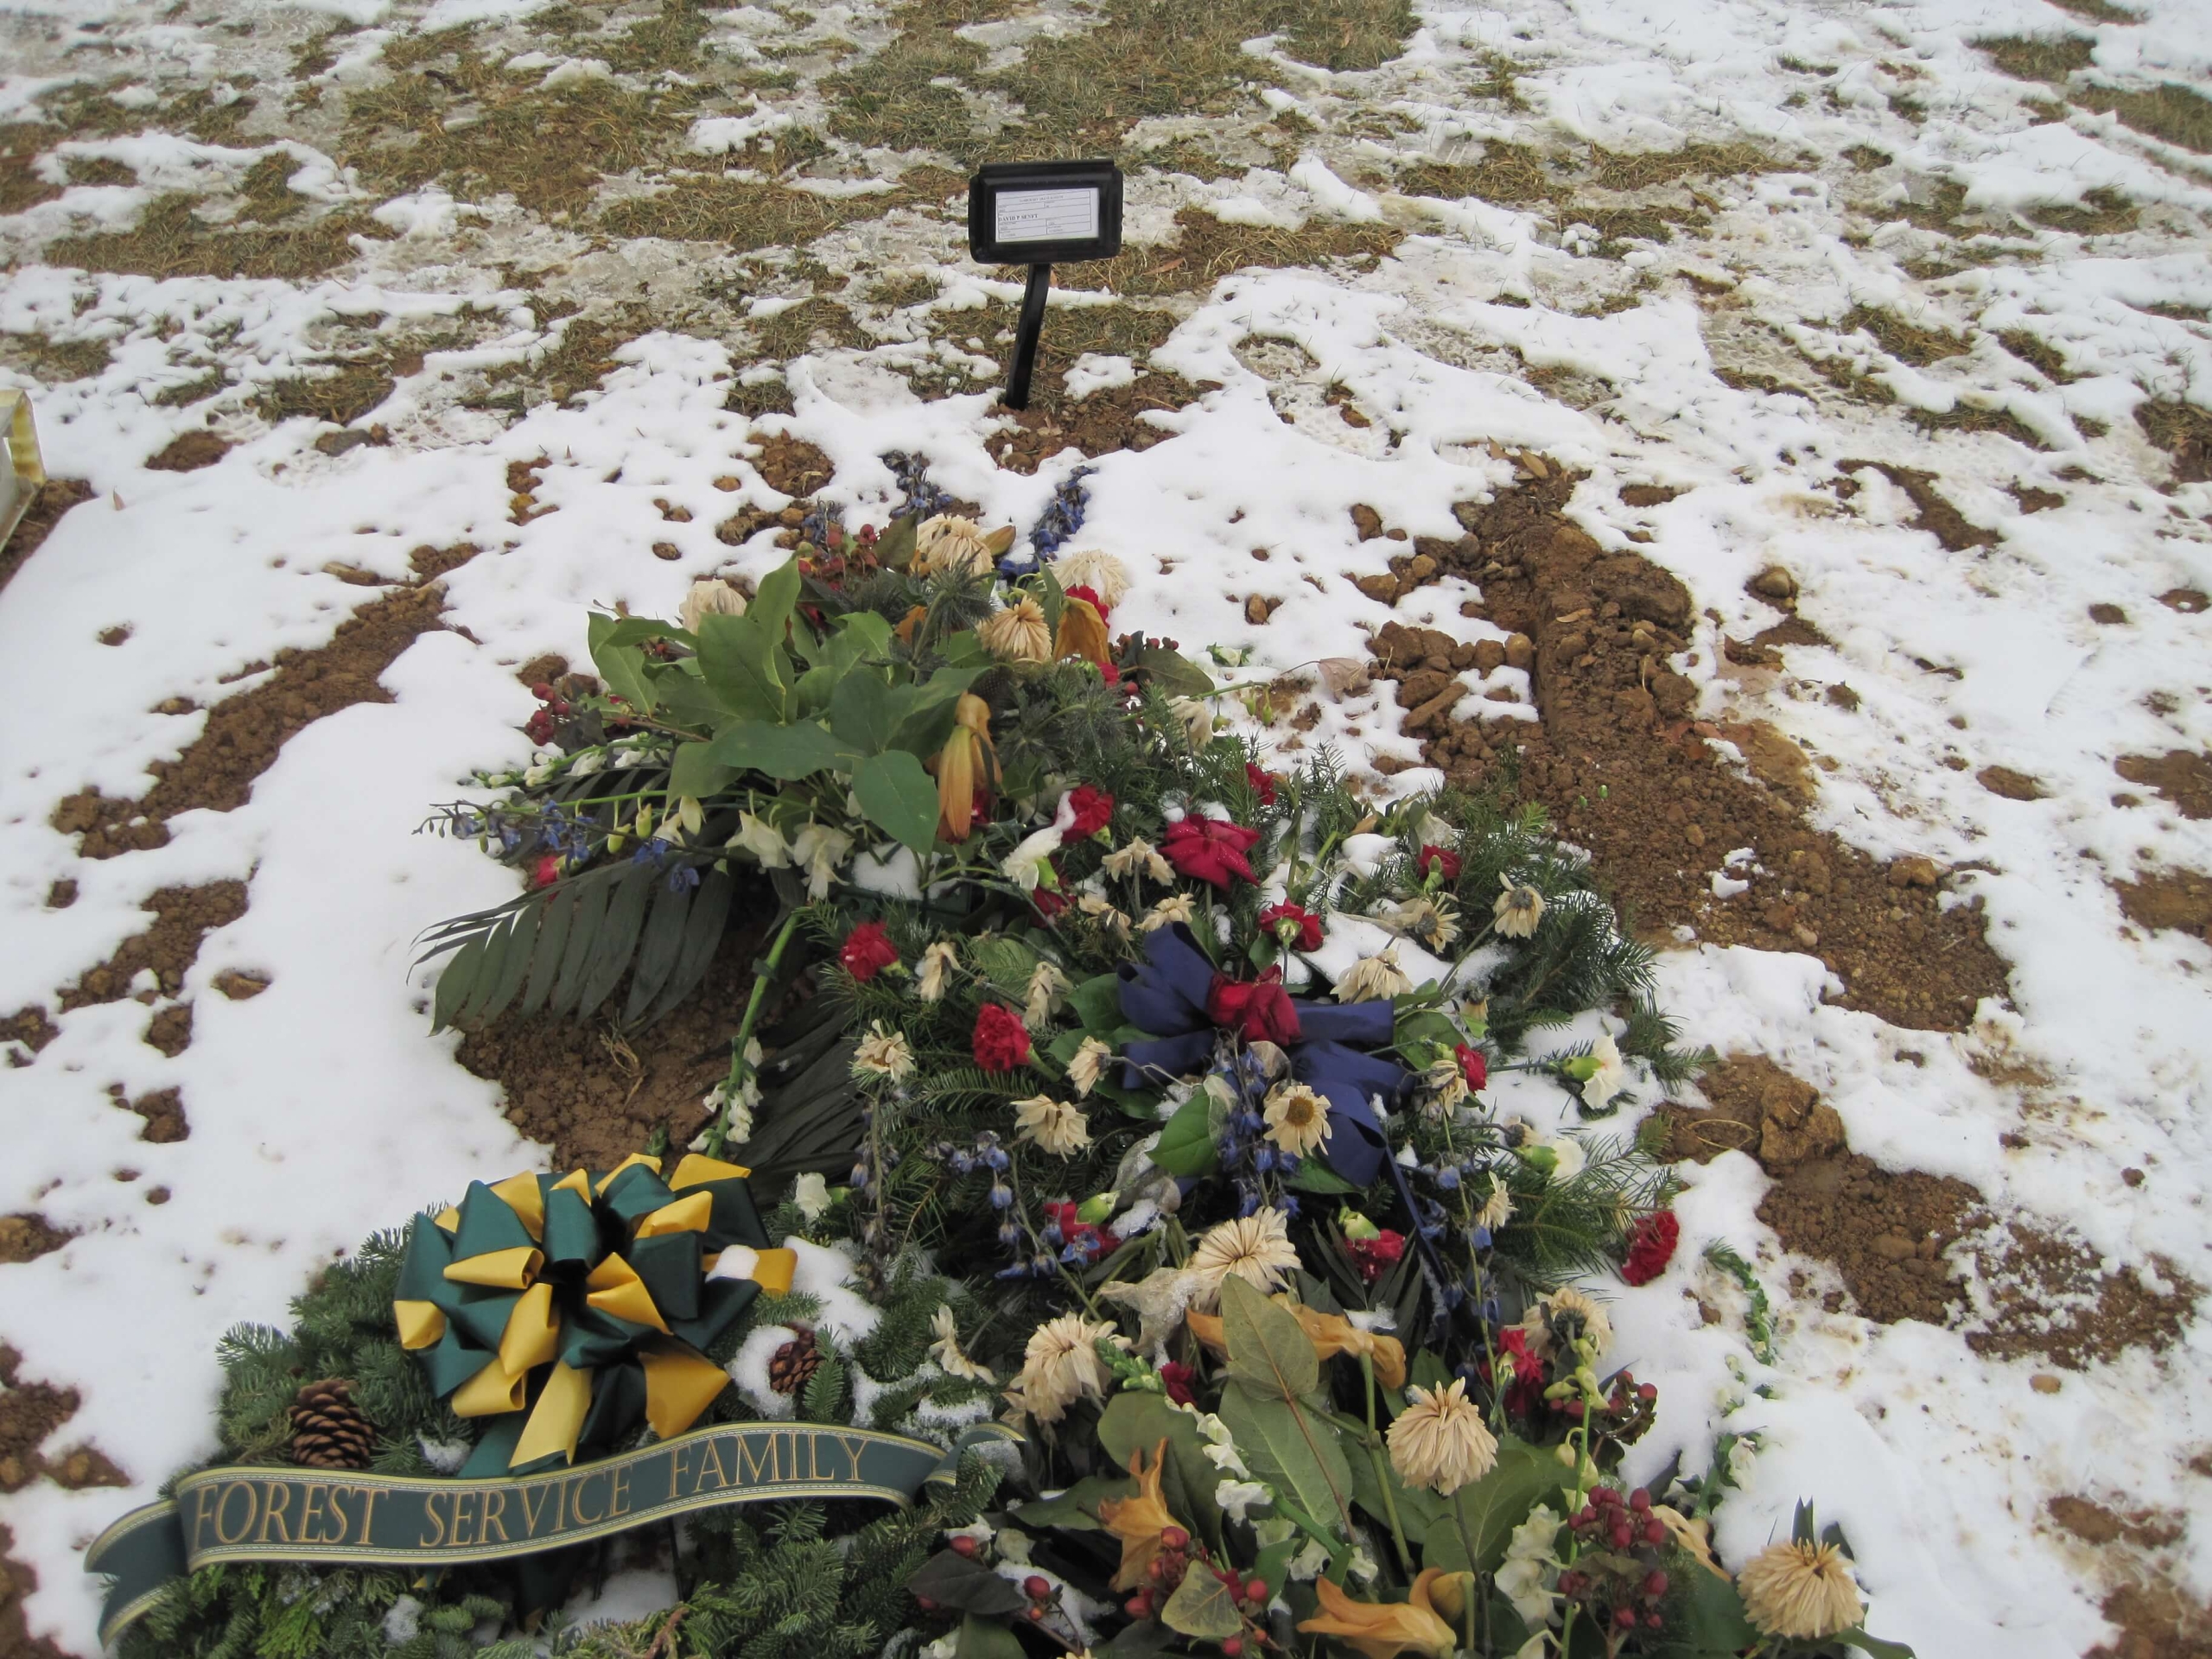 dpsenft-gravesite-photo-by-eileen-horan-december-2010-002